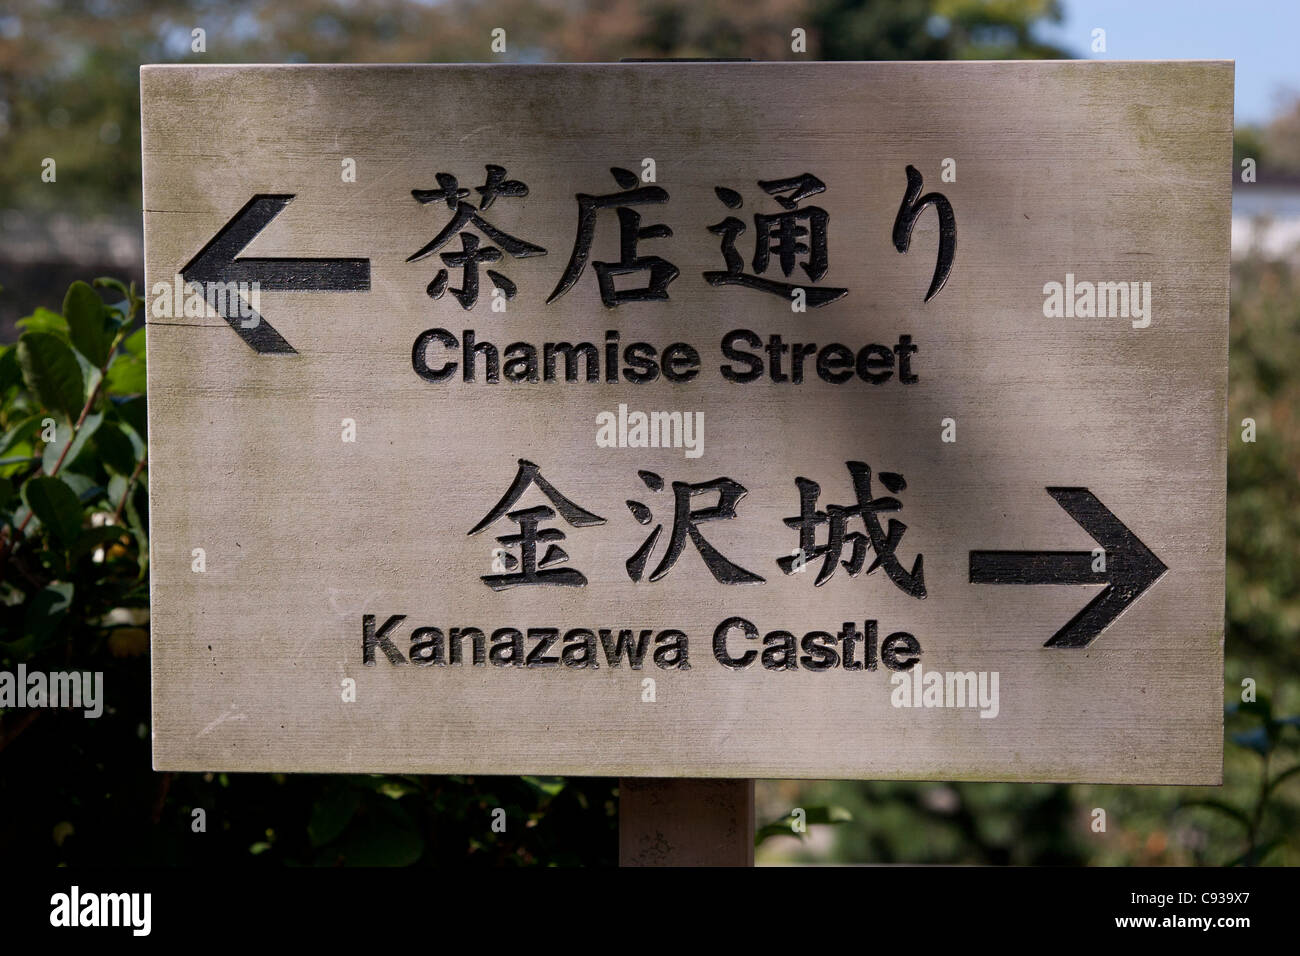 A wooden tourist sign for Kanazawa castle and Chemise Street, Kanazawa,  Japan Stock Photo - Alamy